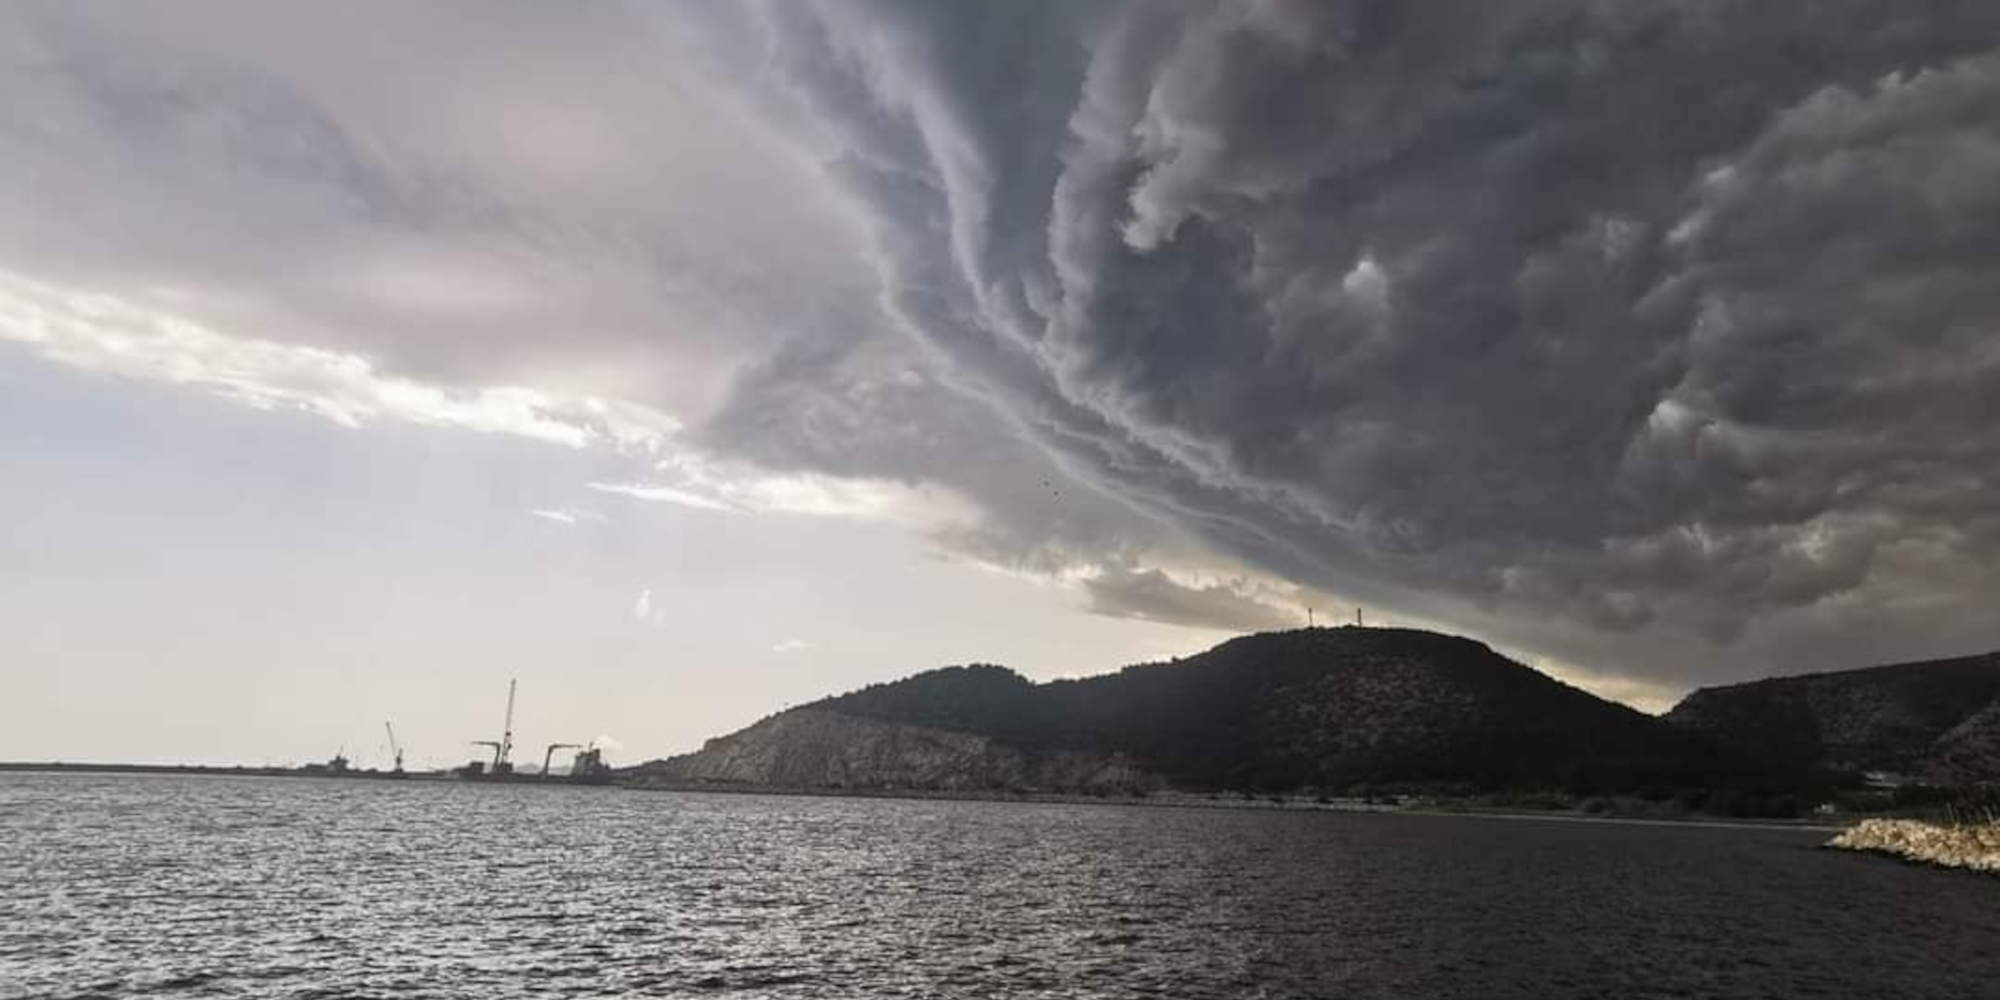 Έκτακτο δελτίο επιδείνωσης καιρού εξέδωσε η ΕΜΥ. Απειλητικό σύννεφο πάνω από την πόλη της Καβάλας